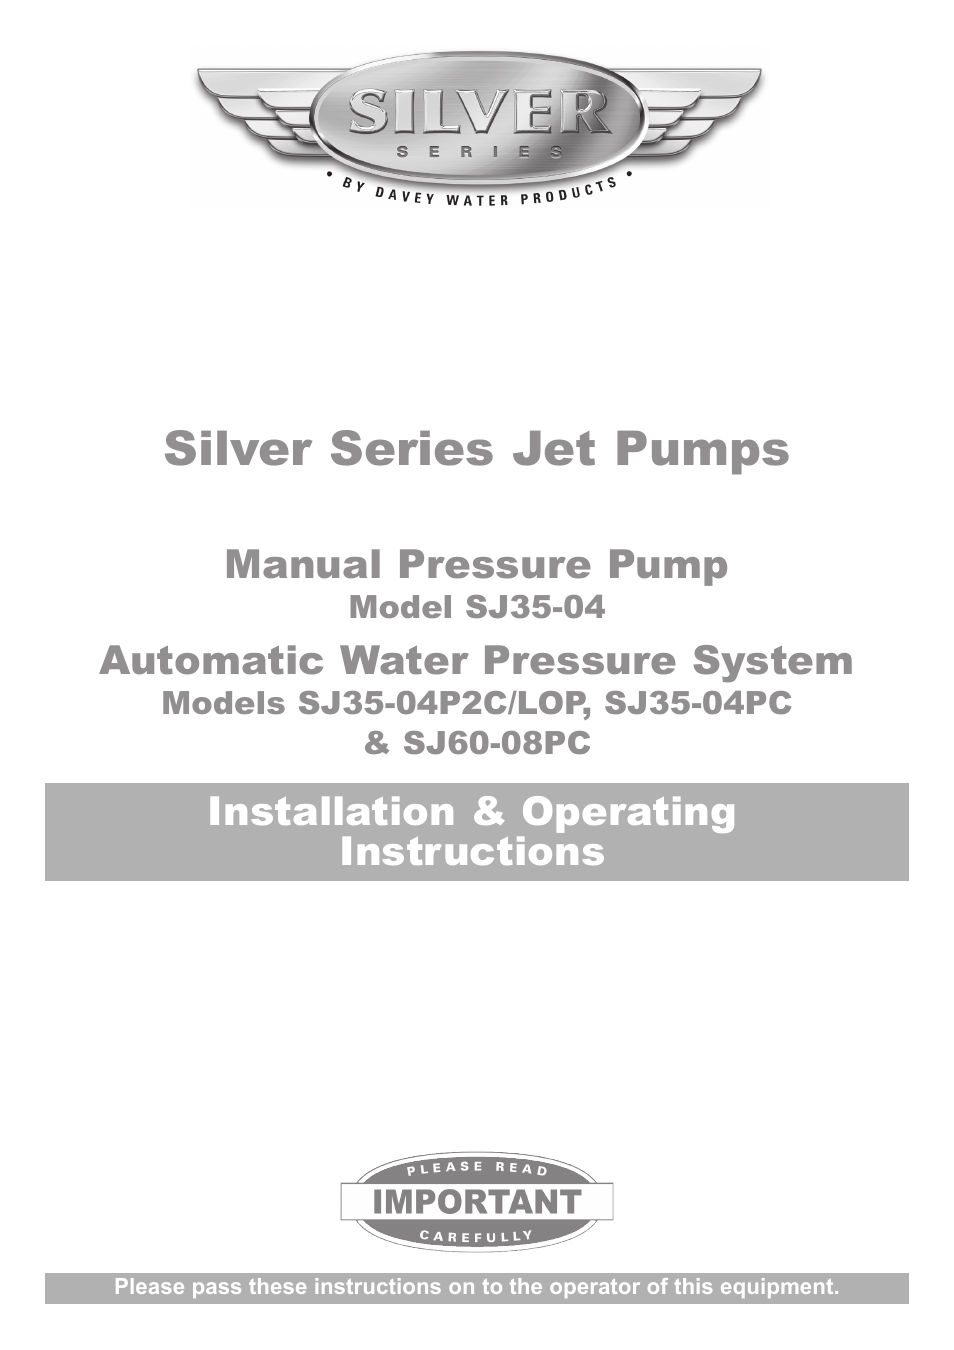 SJ35-04 Manual Pressure Pump